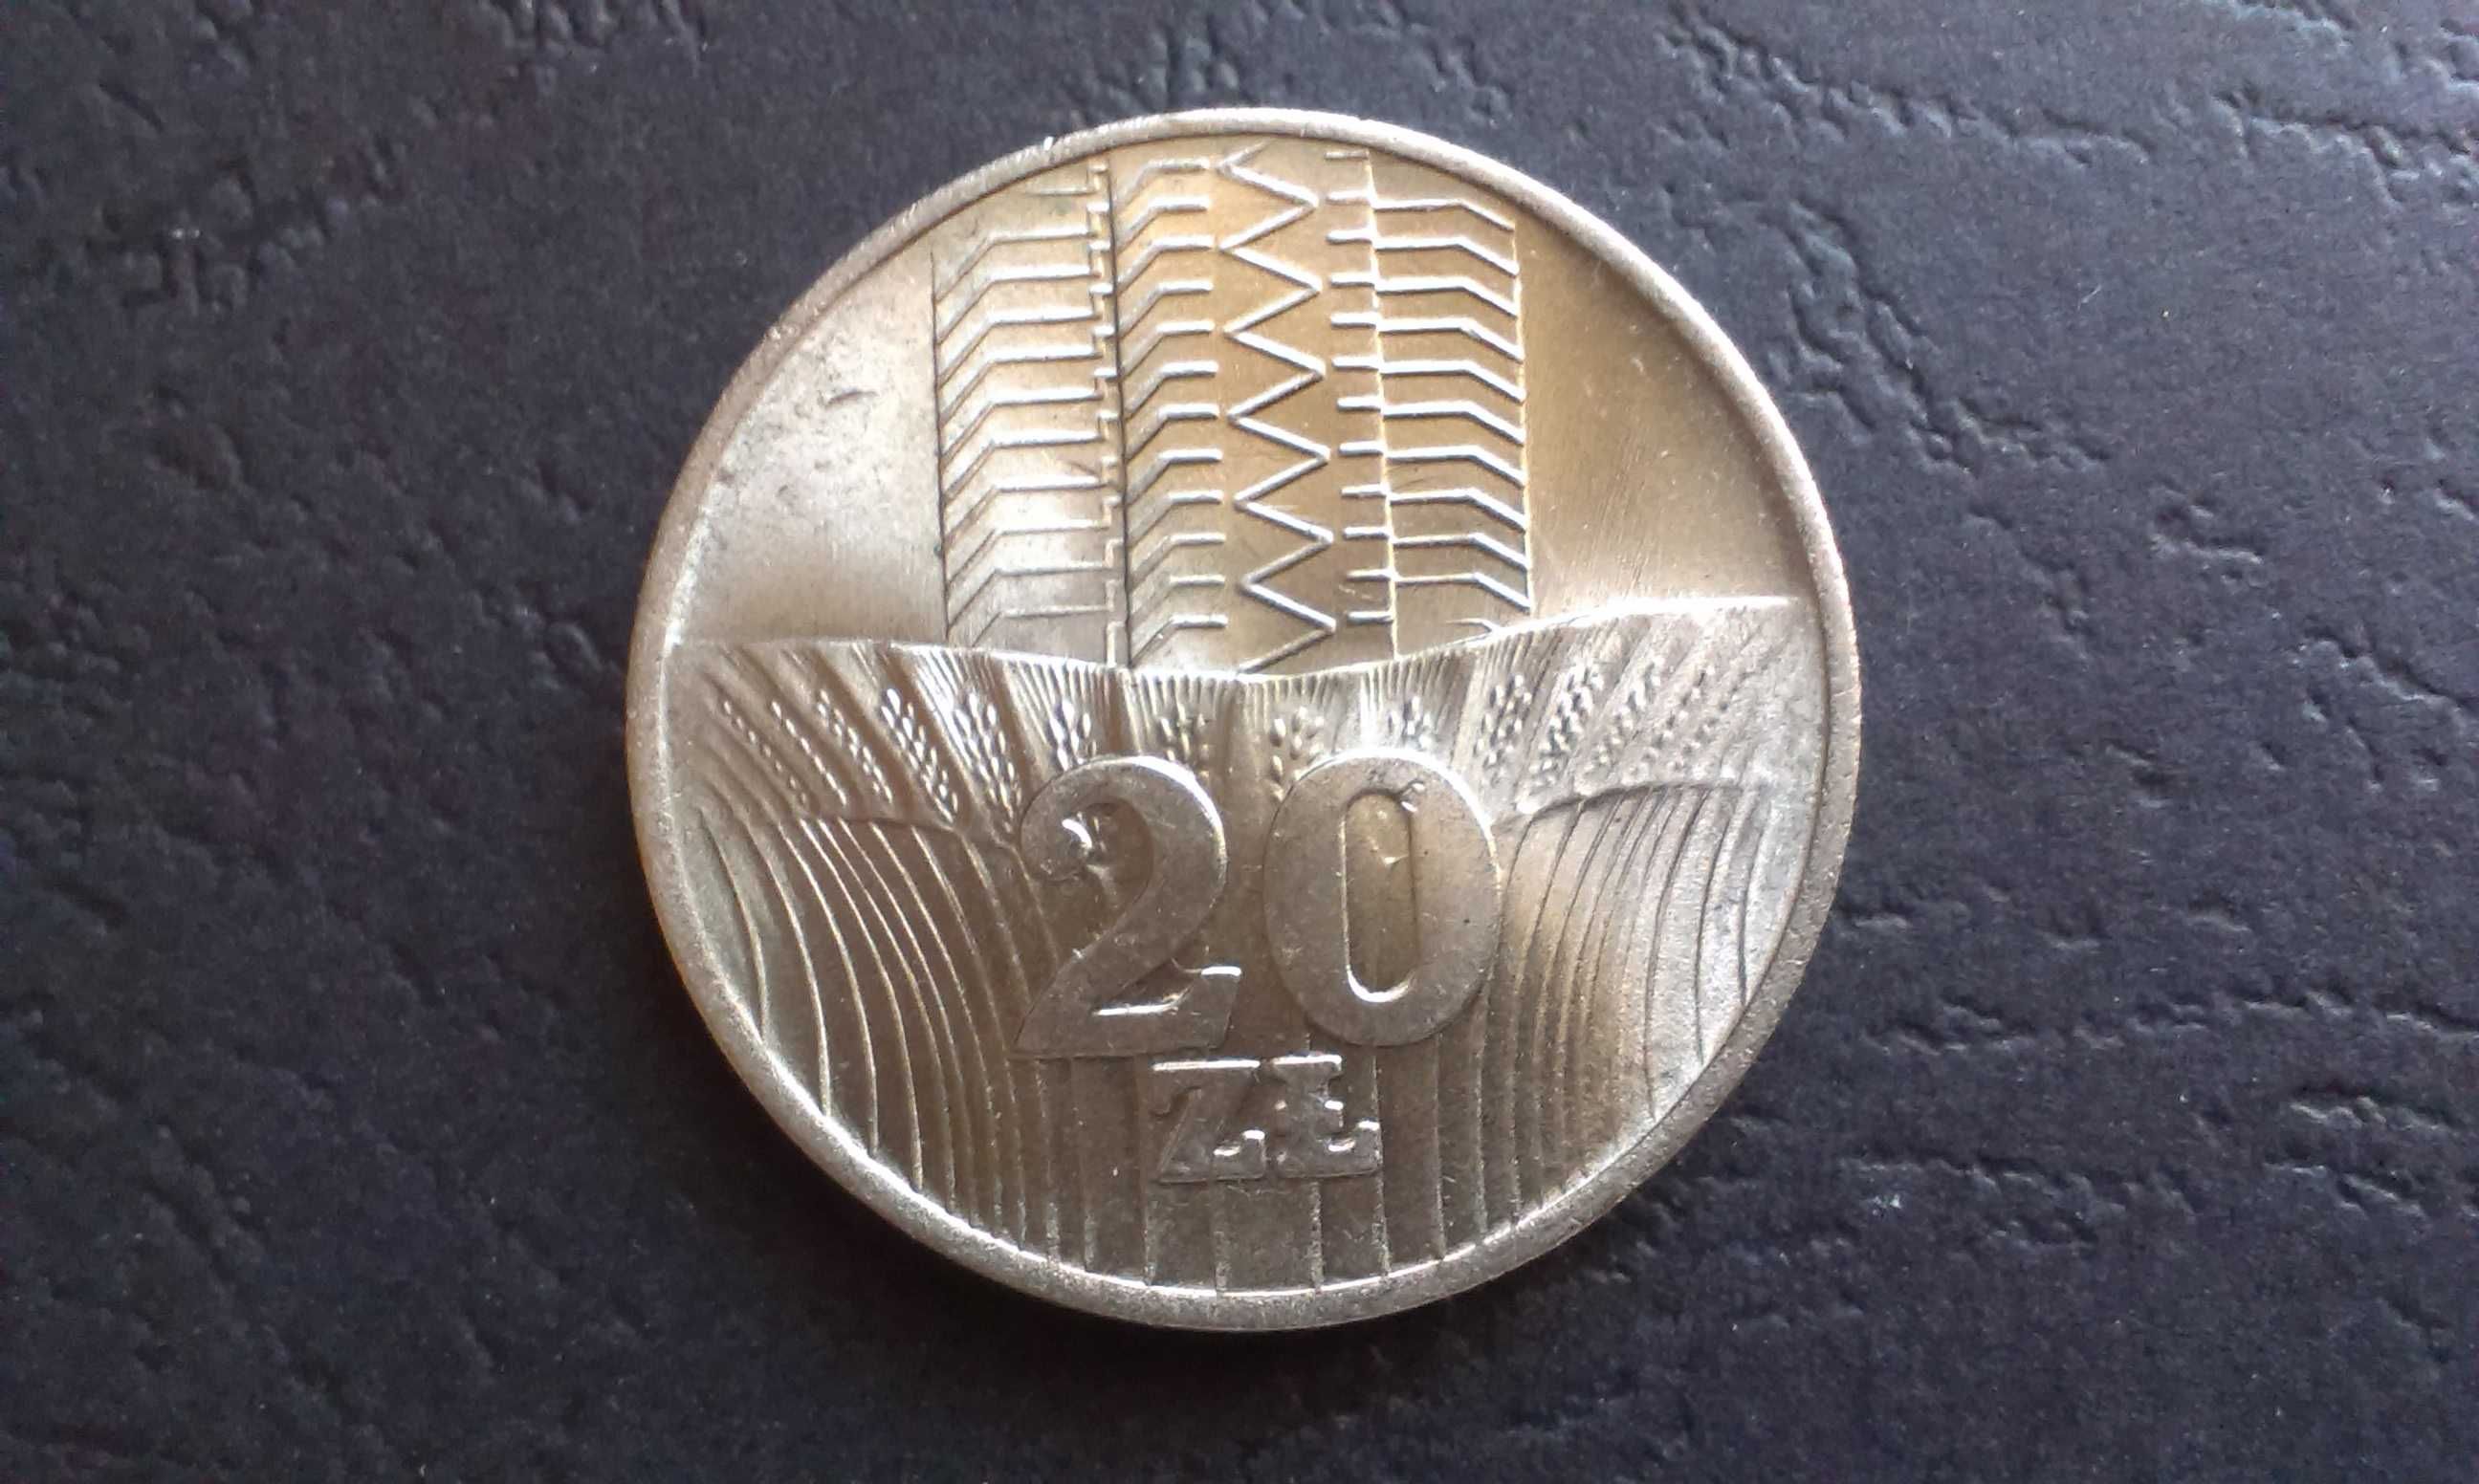 Moneta 20 złotych 1973 Wieżowiec i kłosy, PRL.